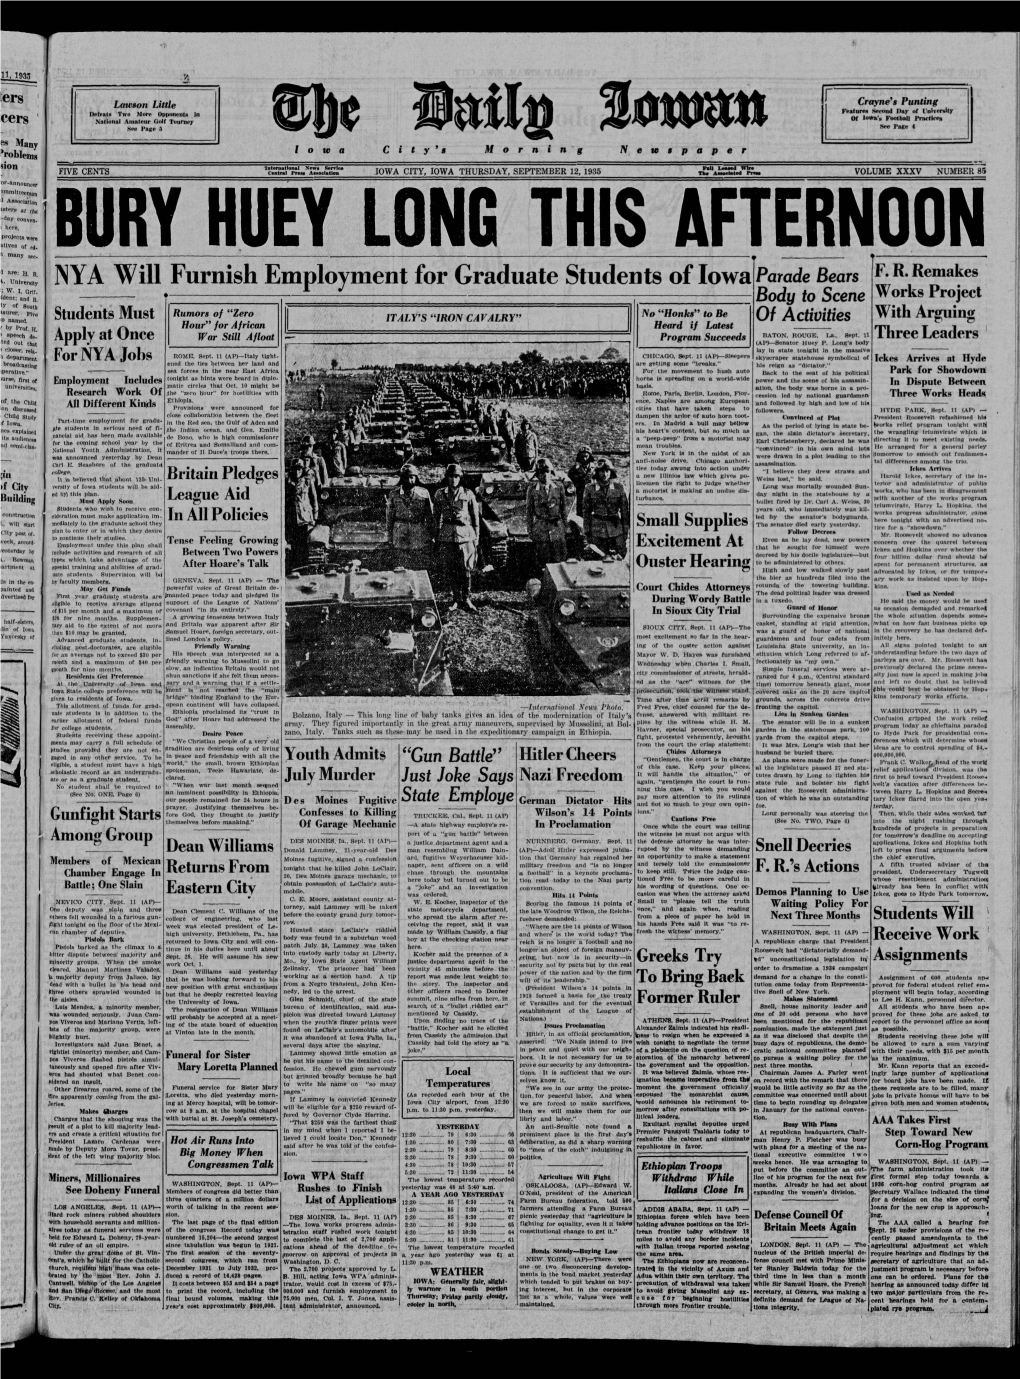 Daily Iowan (Iowa City, Iowa), 1935-09-12